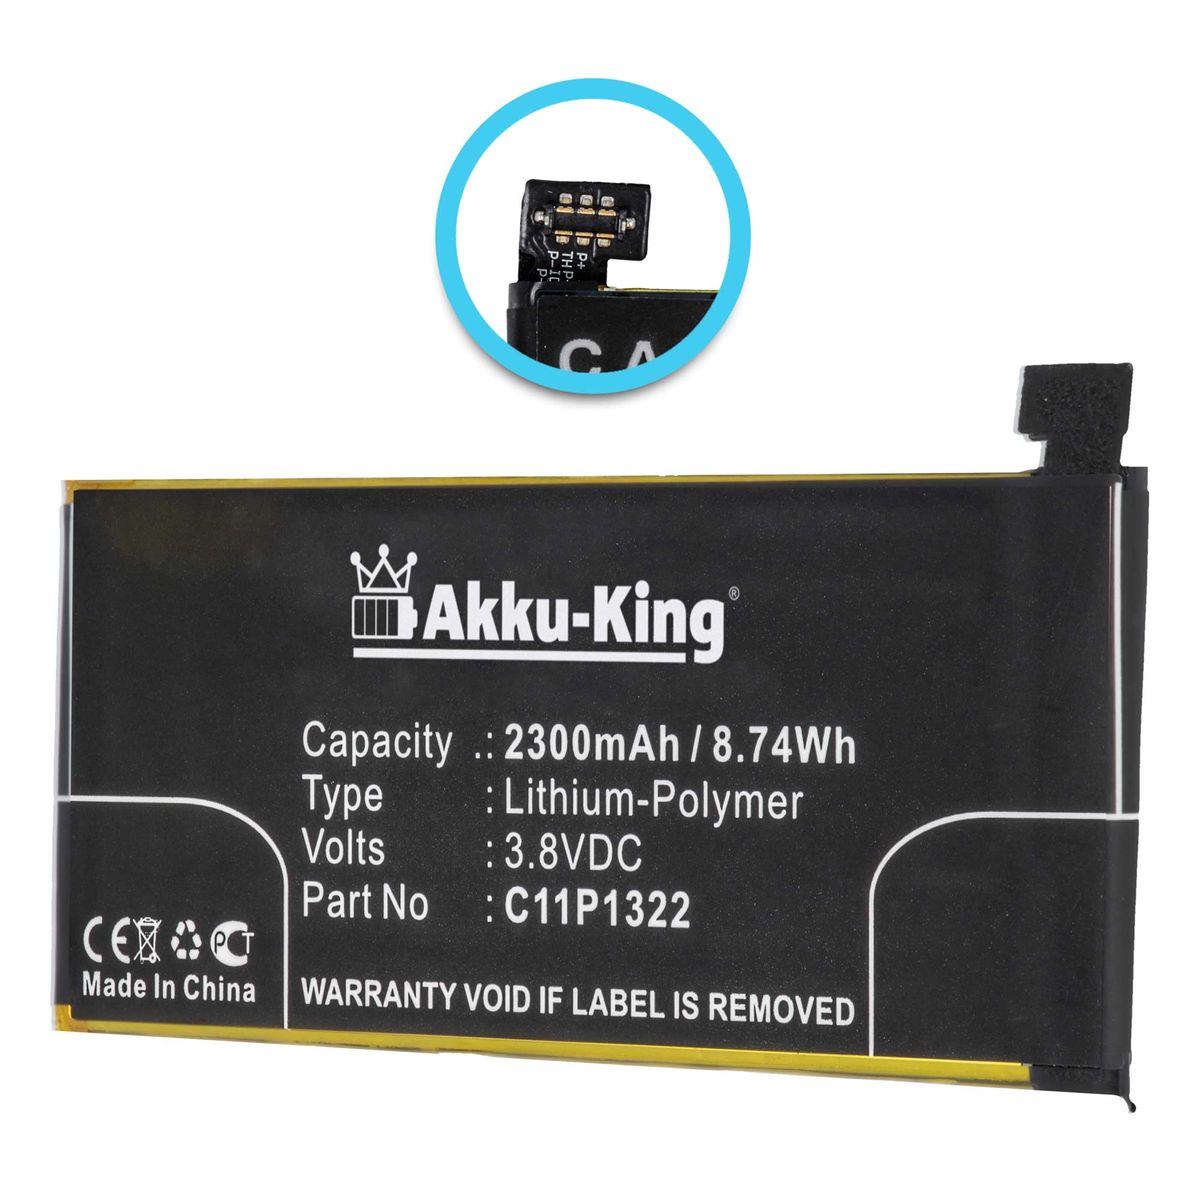 AKKU-KING Akku Volt, Asus Li-Polymer 3.8 für 2300mAh Handy-Akku, C11P1322